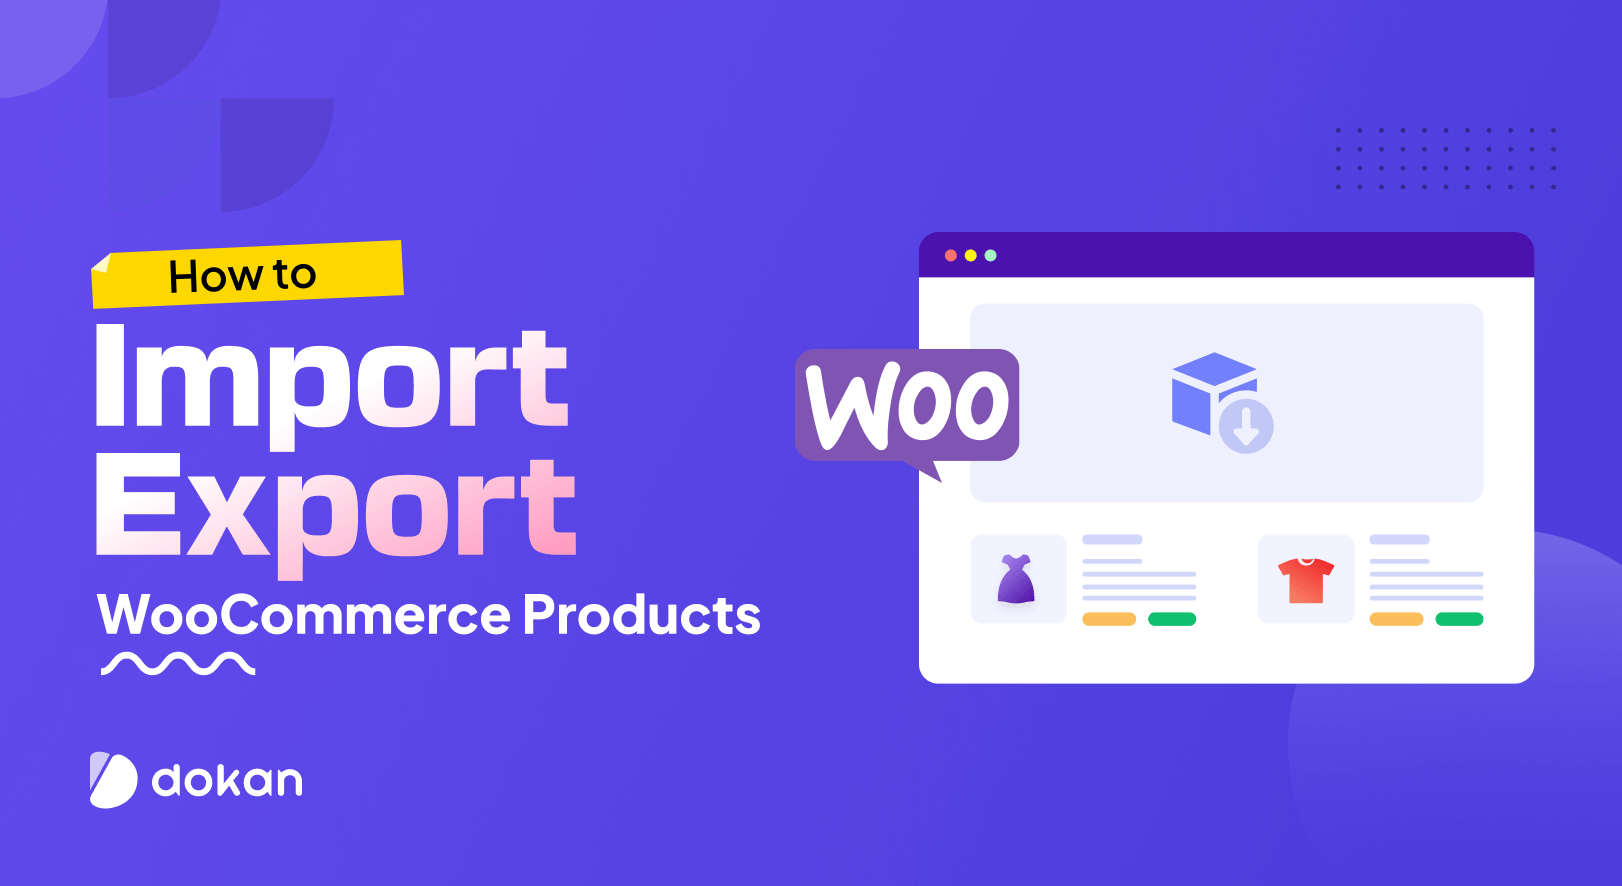 Comment importer et exporter des produits WooCommerce – 2 méthodes simples pour les débutants